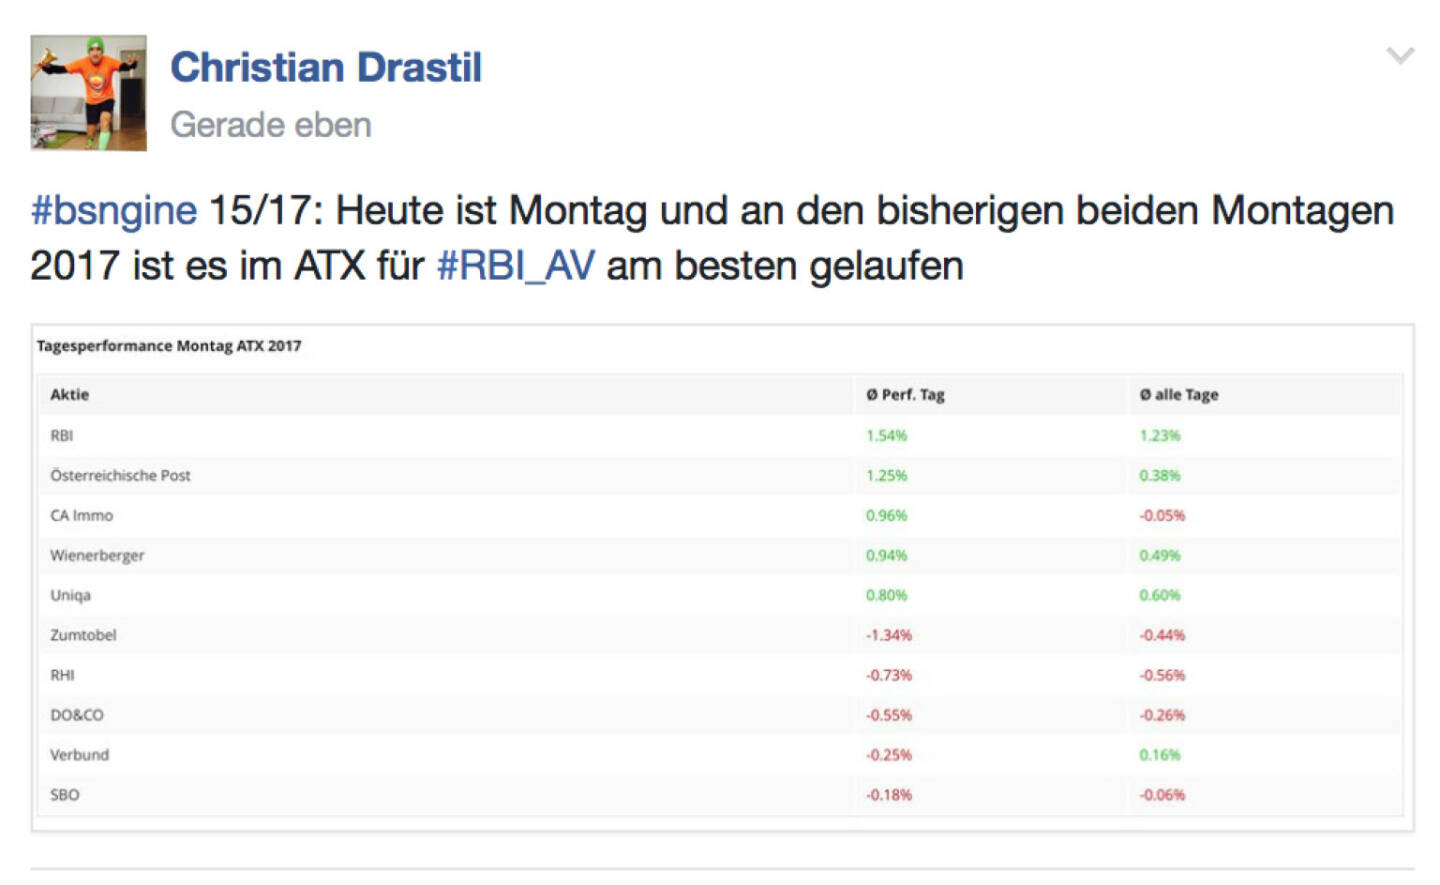 RBI likes Mondays @drastil